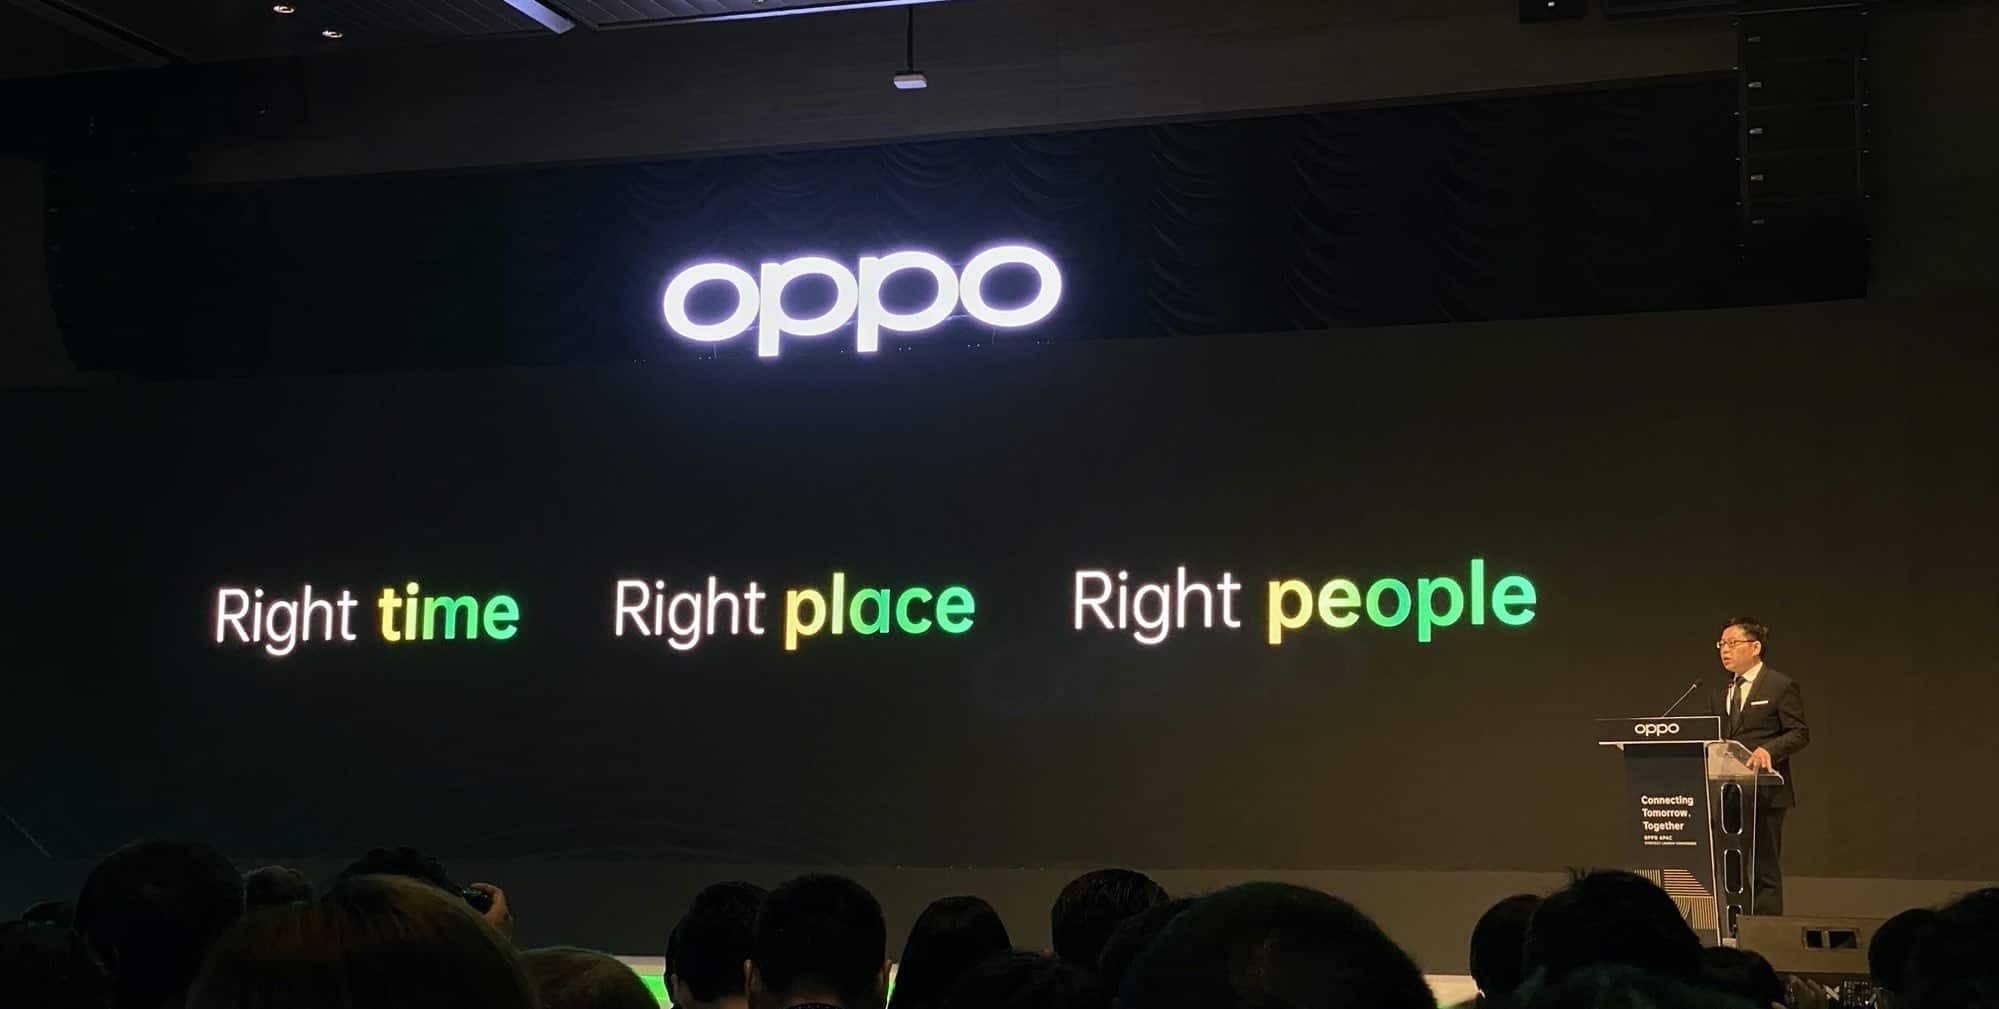 สรุปเรื่องราวจากงาน OPPO APAC Strategy Launch ณ ประเทศมาเลเซีย 19